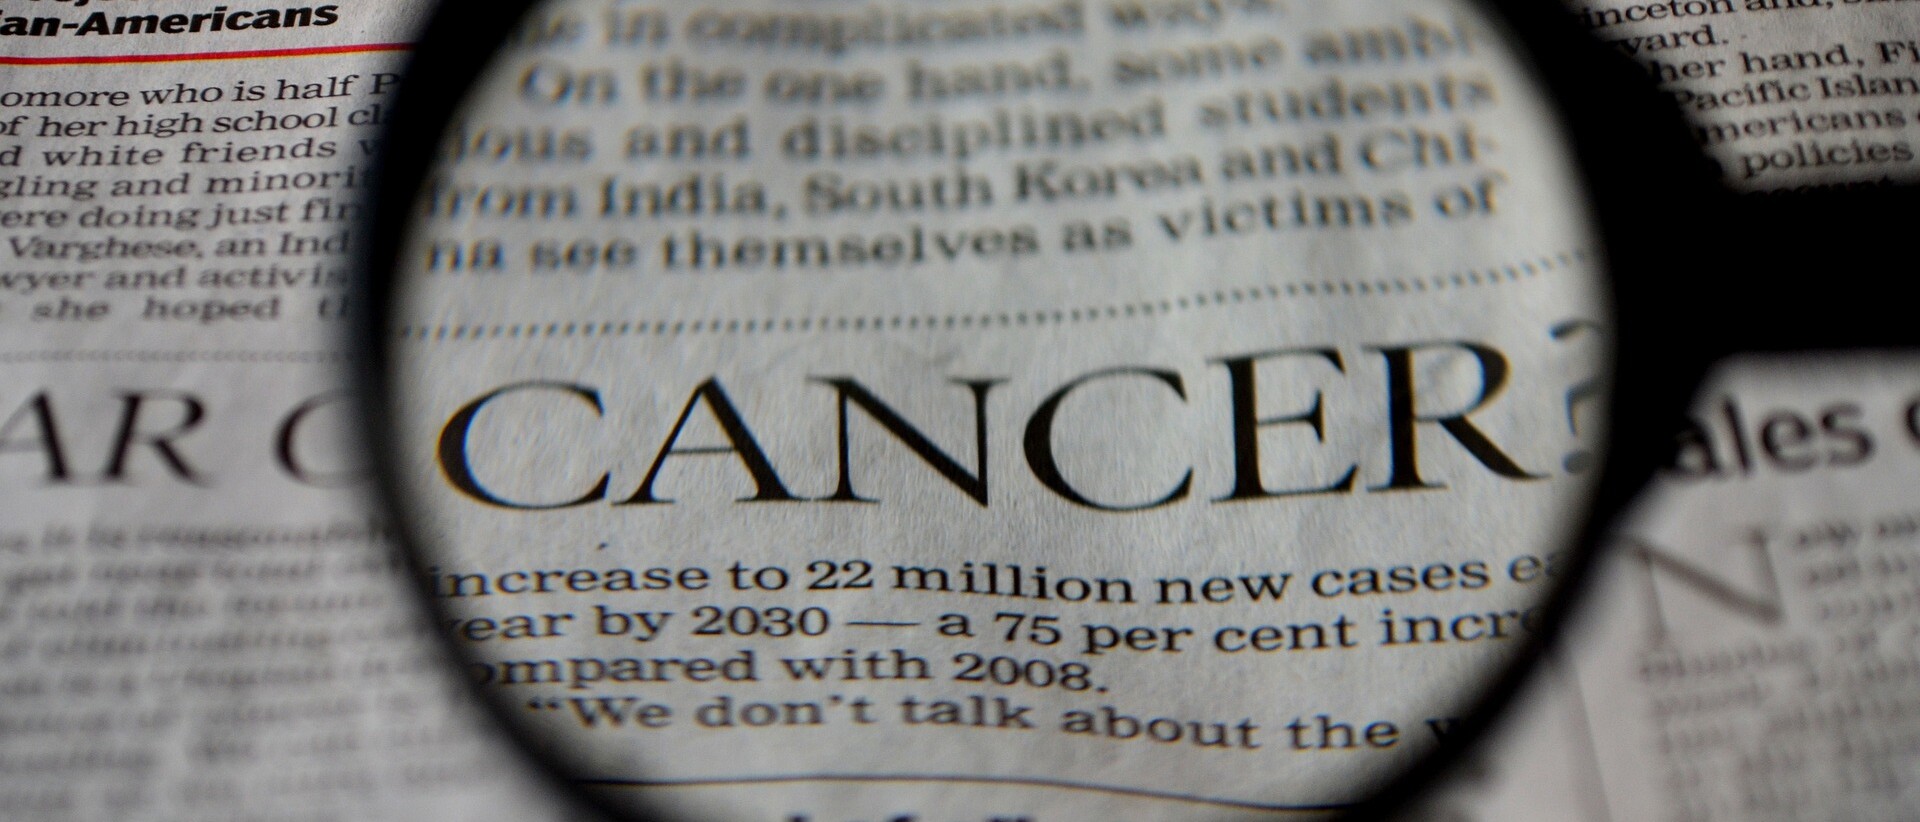 Das Bild zeigt einen englischen Zeitungsauschnitt bei dem das Wort Cancer mit einer Lupe vergrößert wird